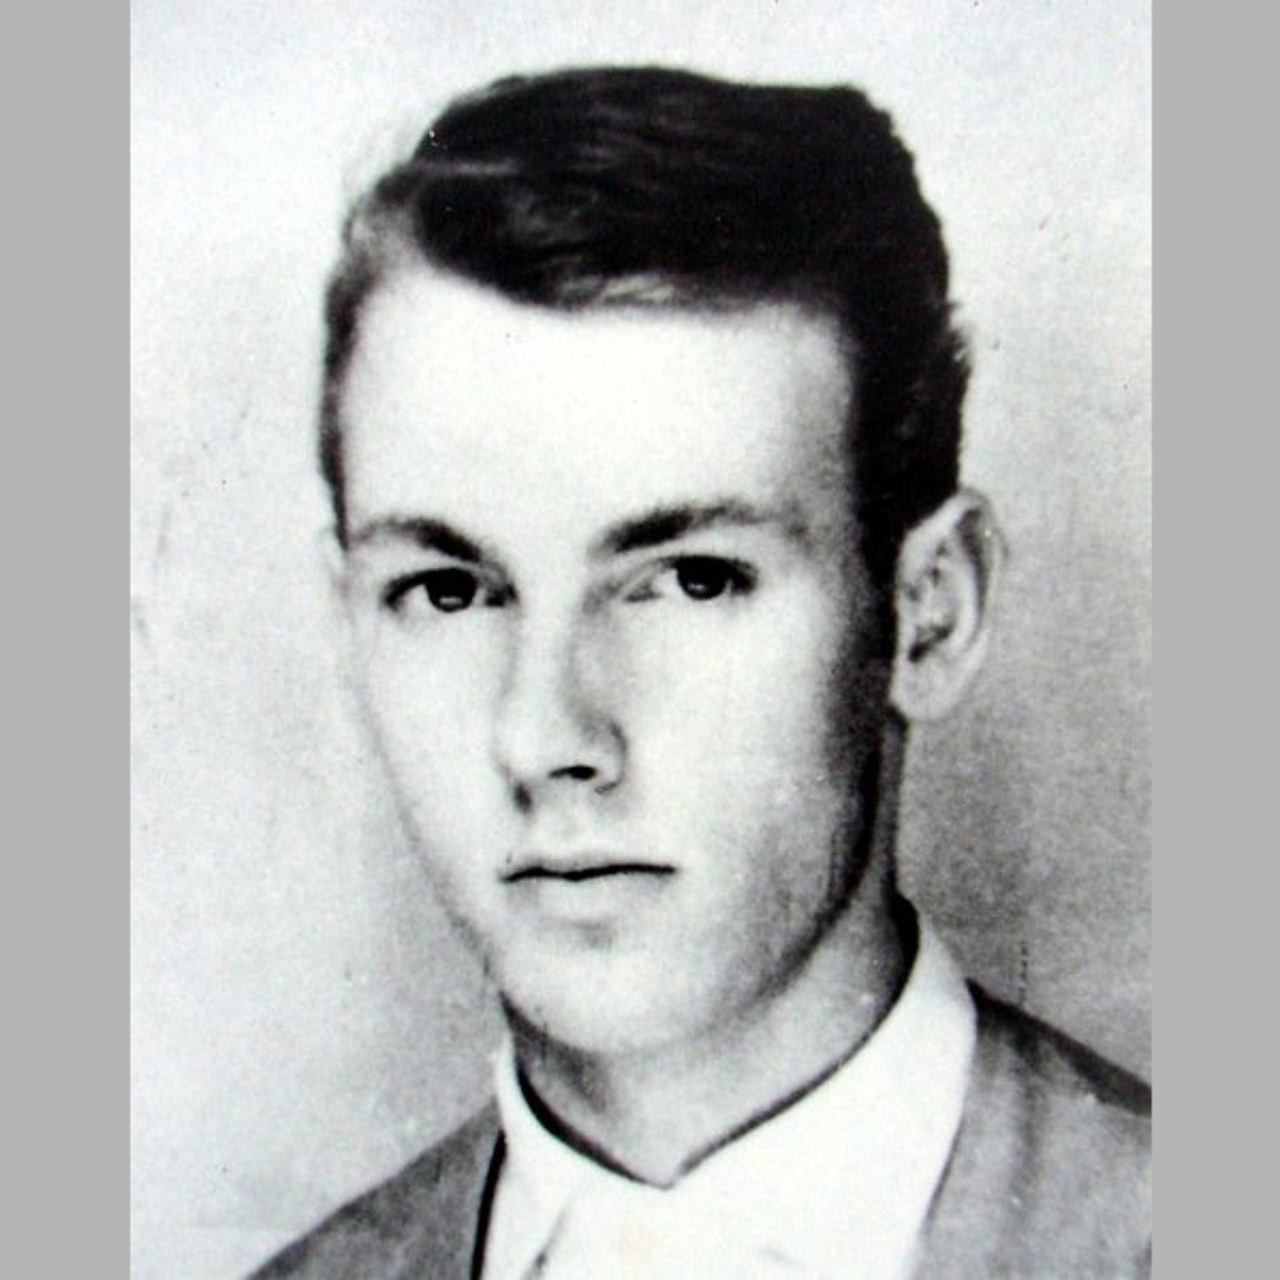 Peter Fechter, jovem morto enquanto tentava atravessar o Muro de Barlim em 1962